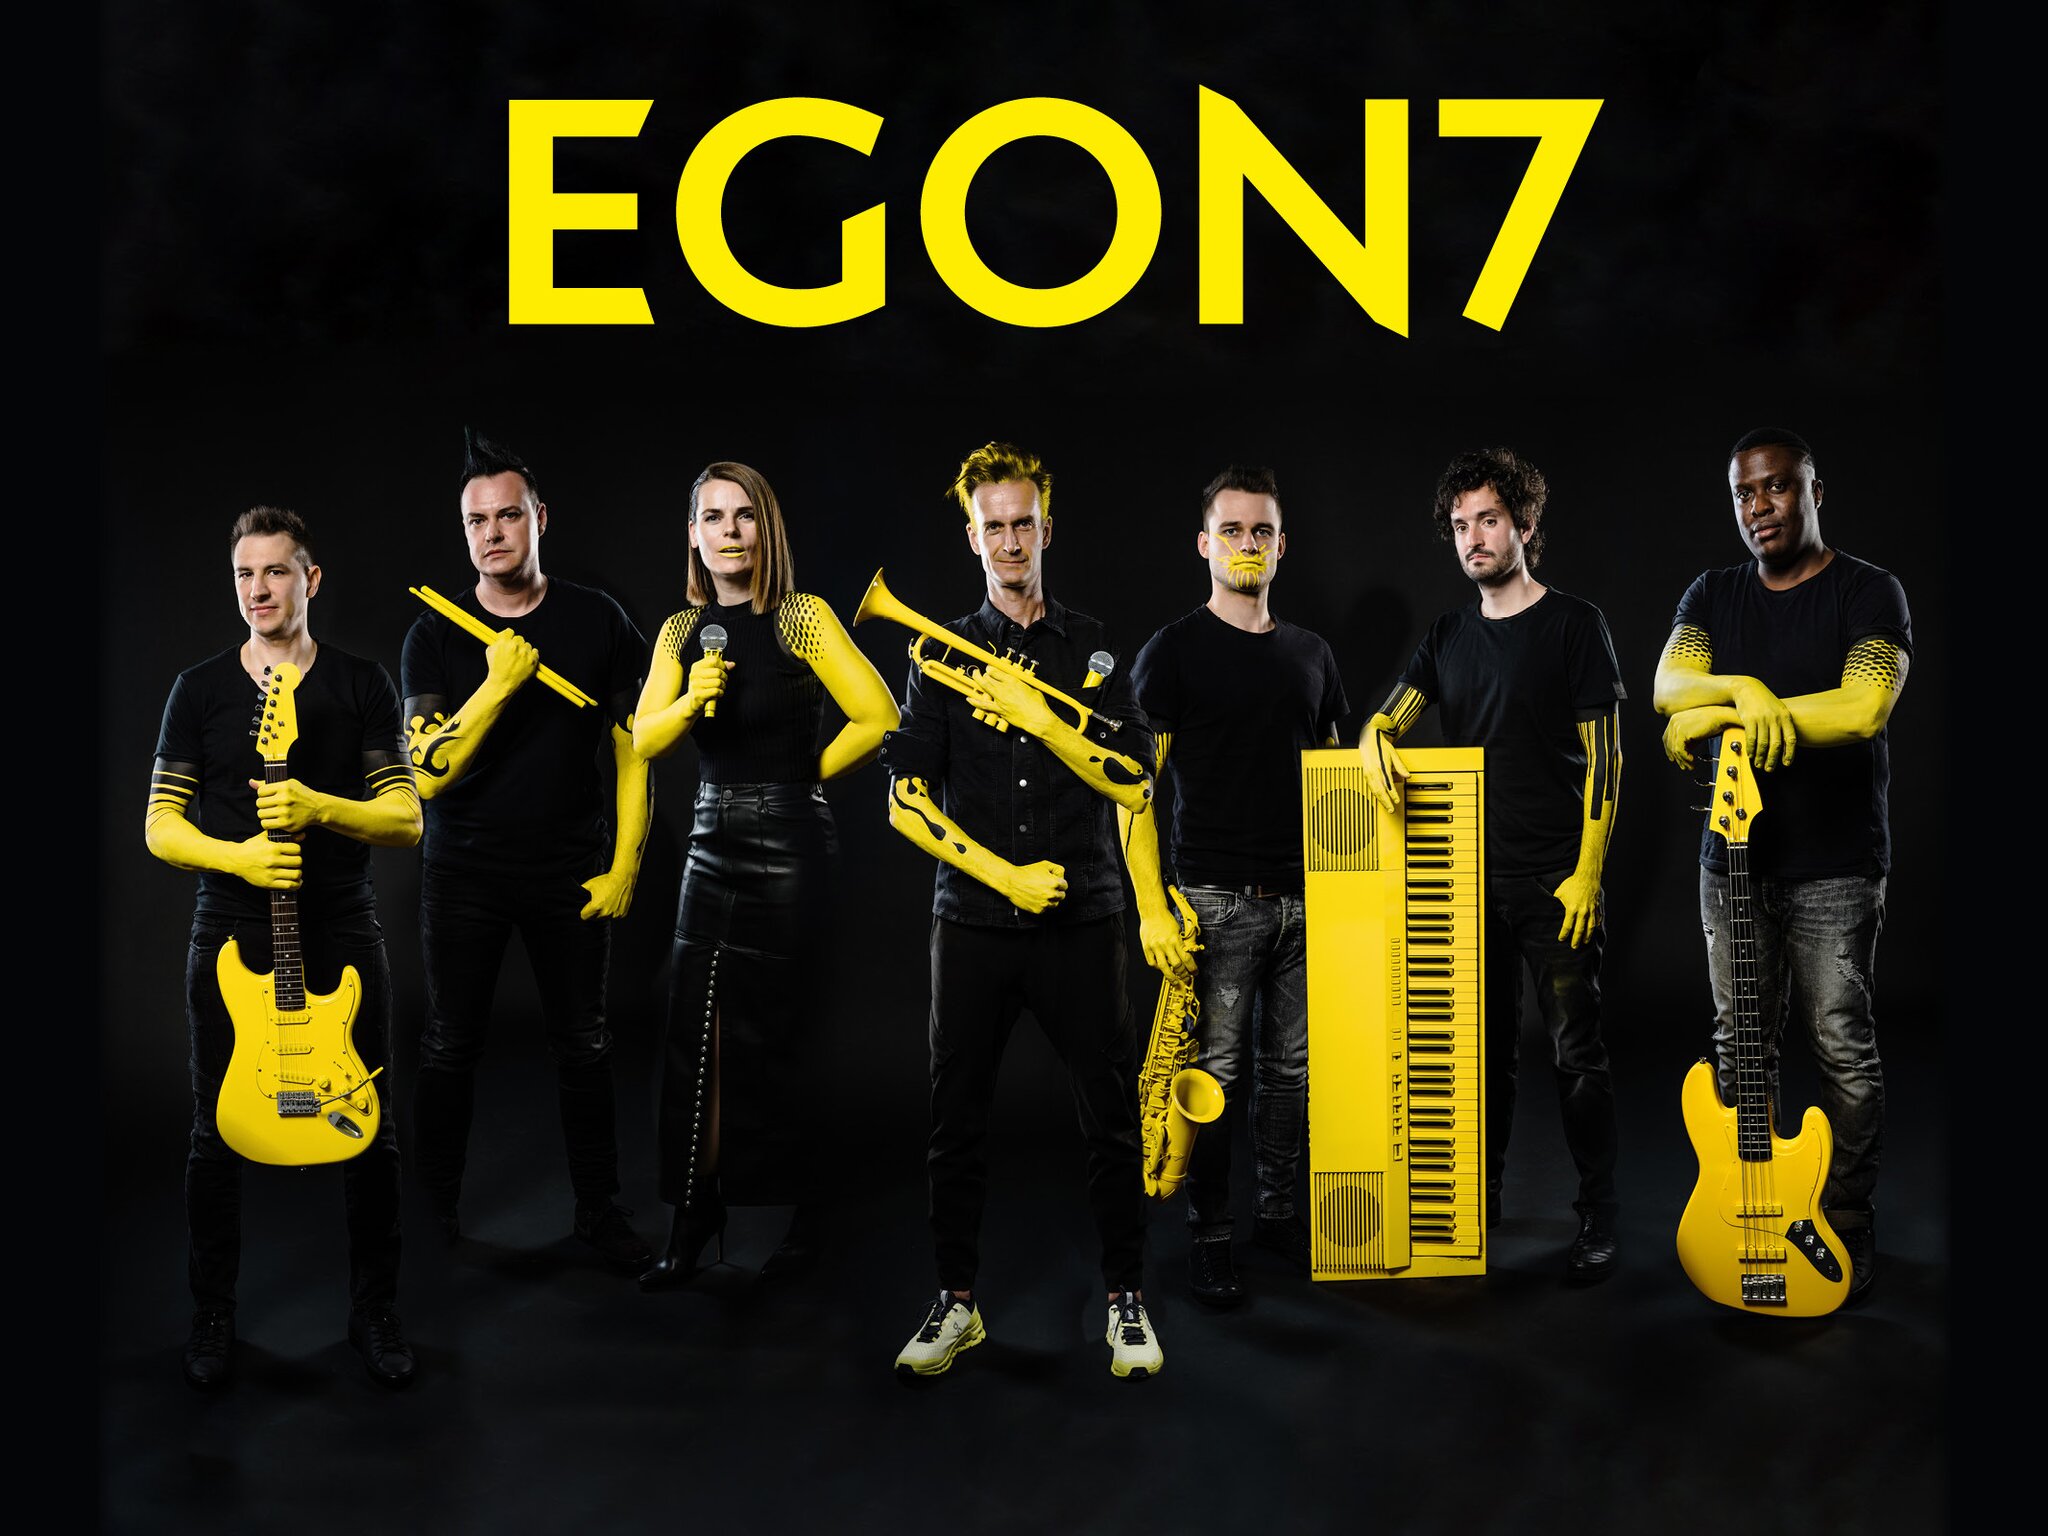 EGON7_copyrigth EGON7